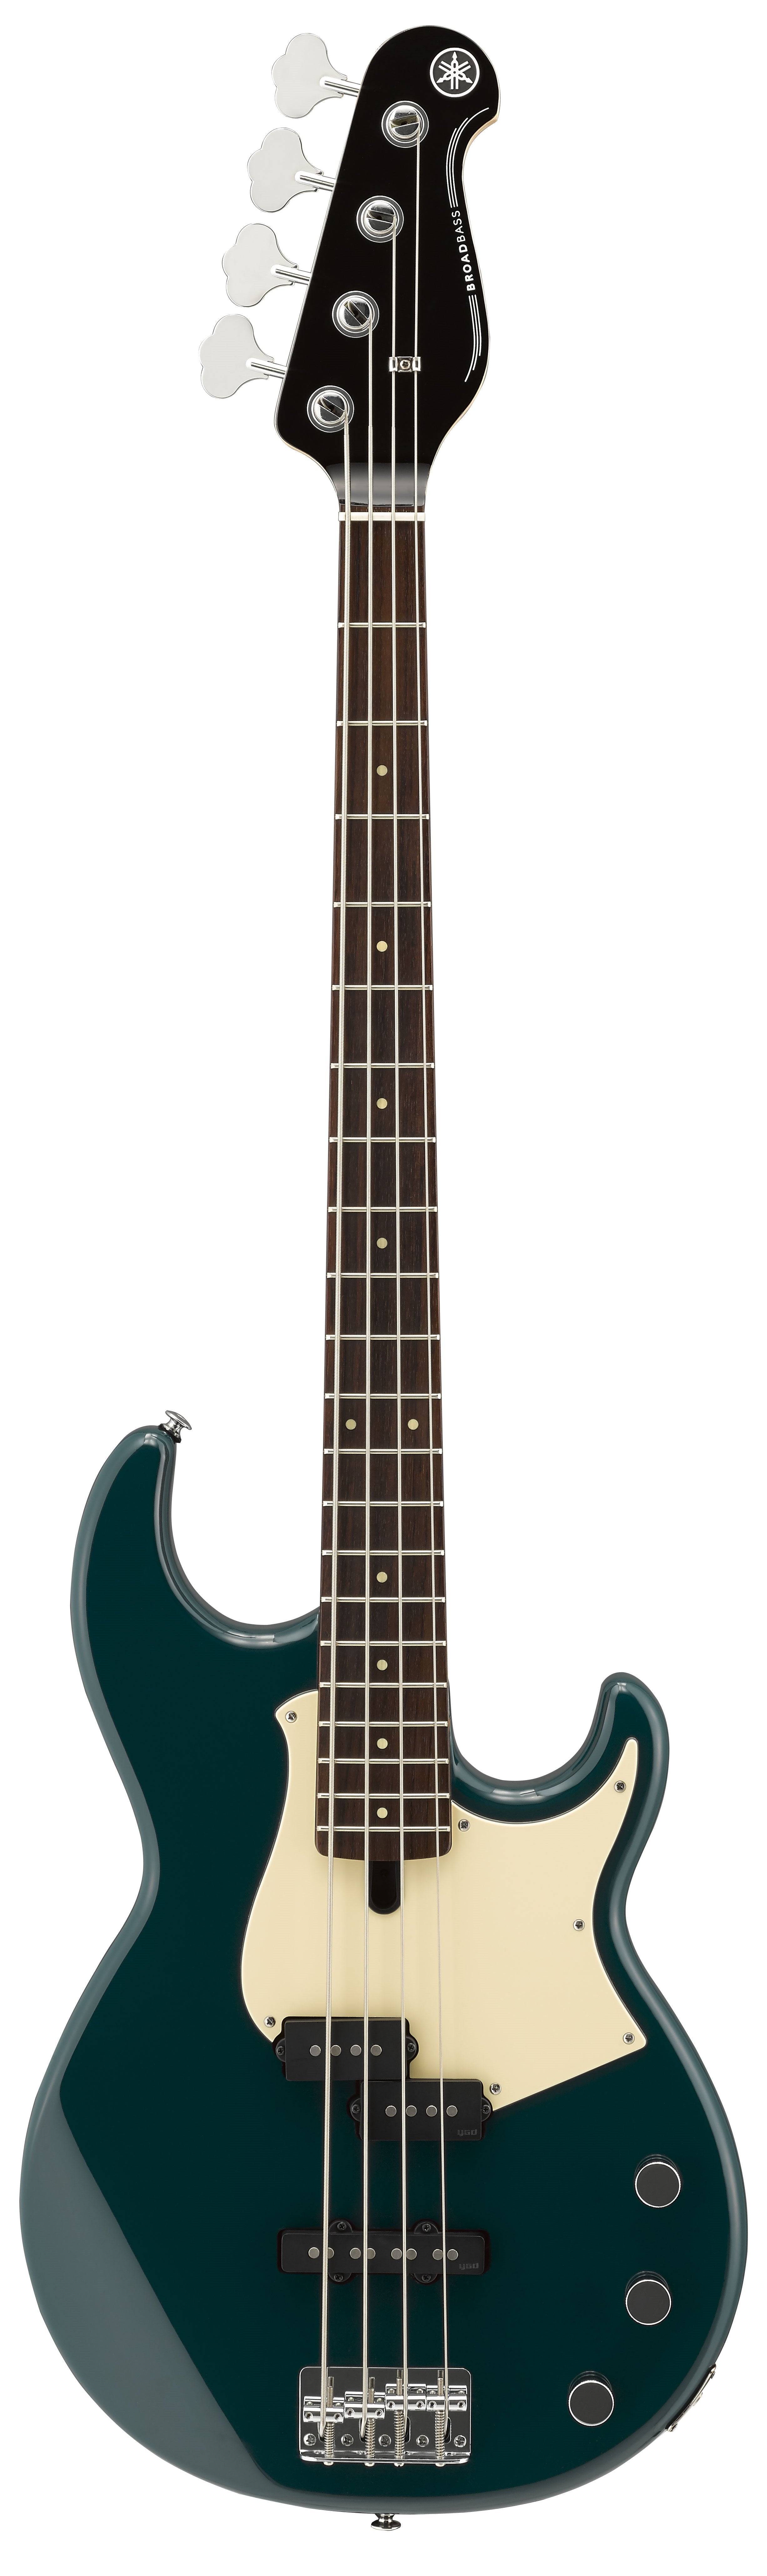 Yamaha BB434 Bass Guitar - Teal Blue